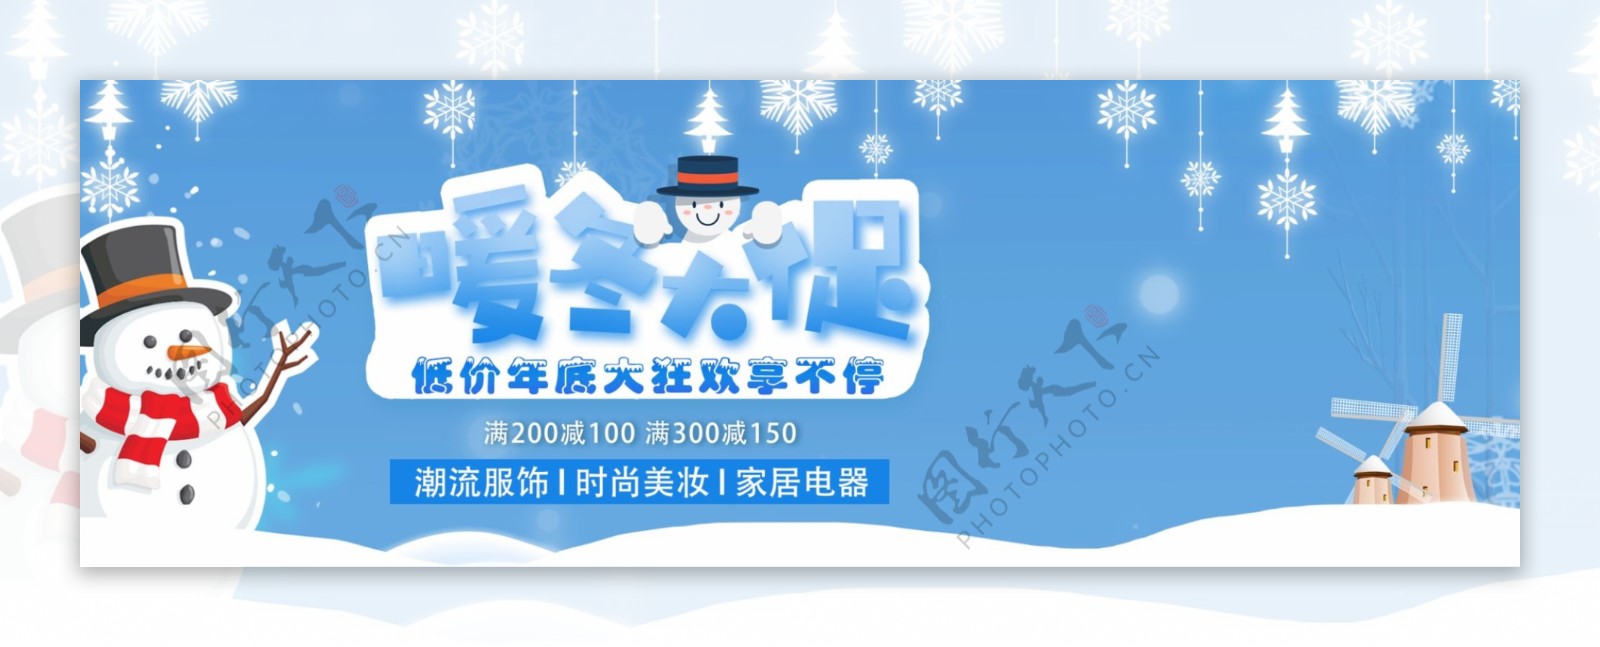 天猫淘宝冬季服饰活动促销海报banner